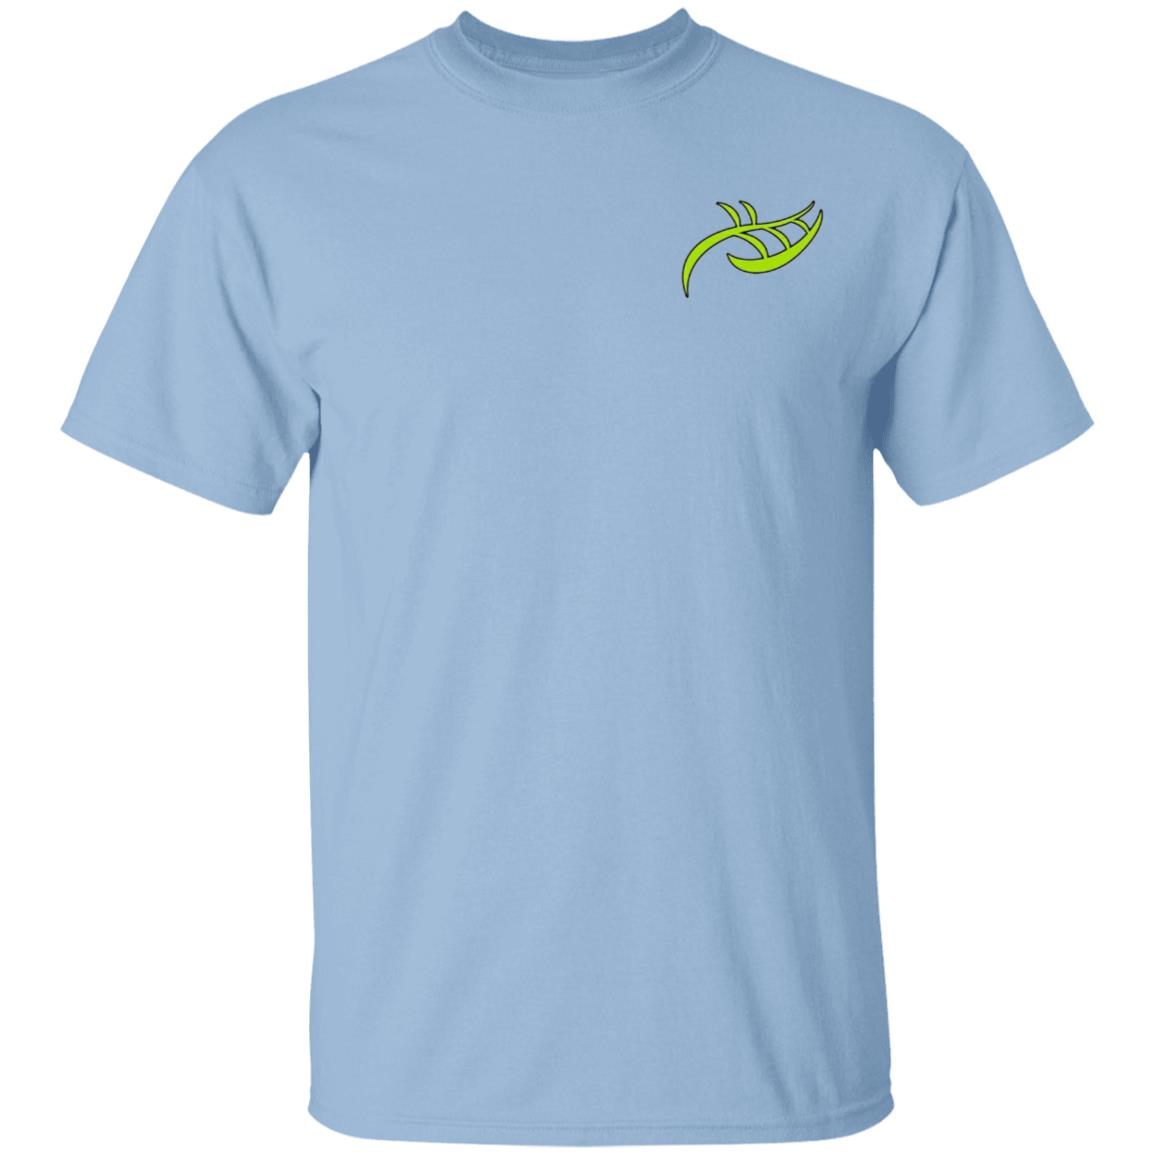 Yardagri T-Shirt (F/B) - Premium T-Shirts from CustomCat - Just $22.95! Shop now at Yard Agri Supply